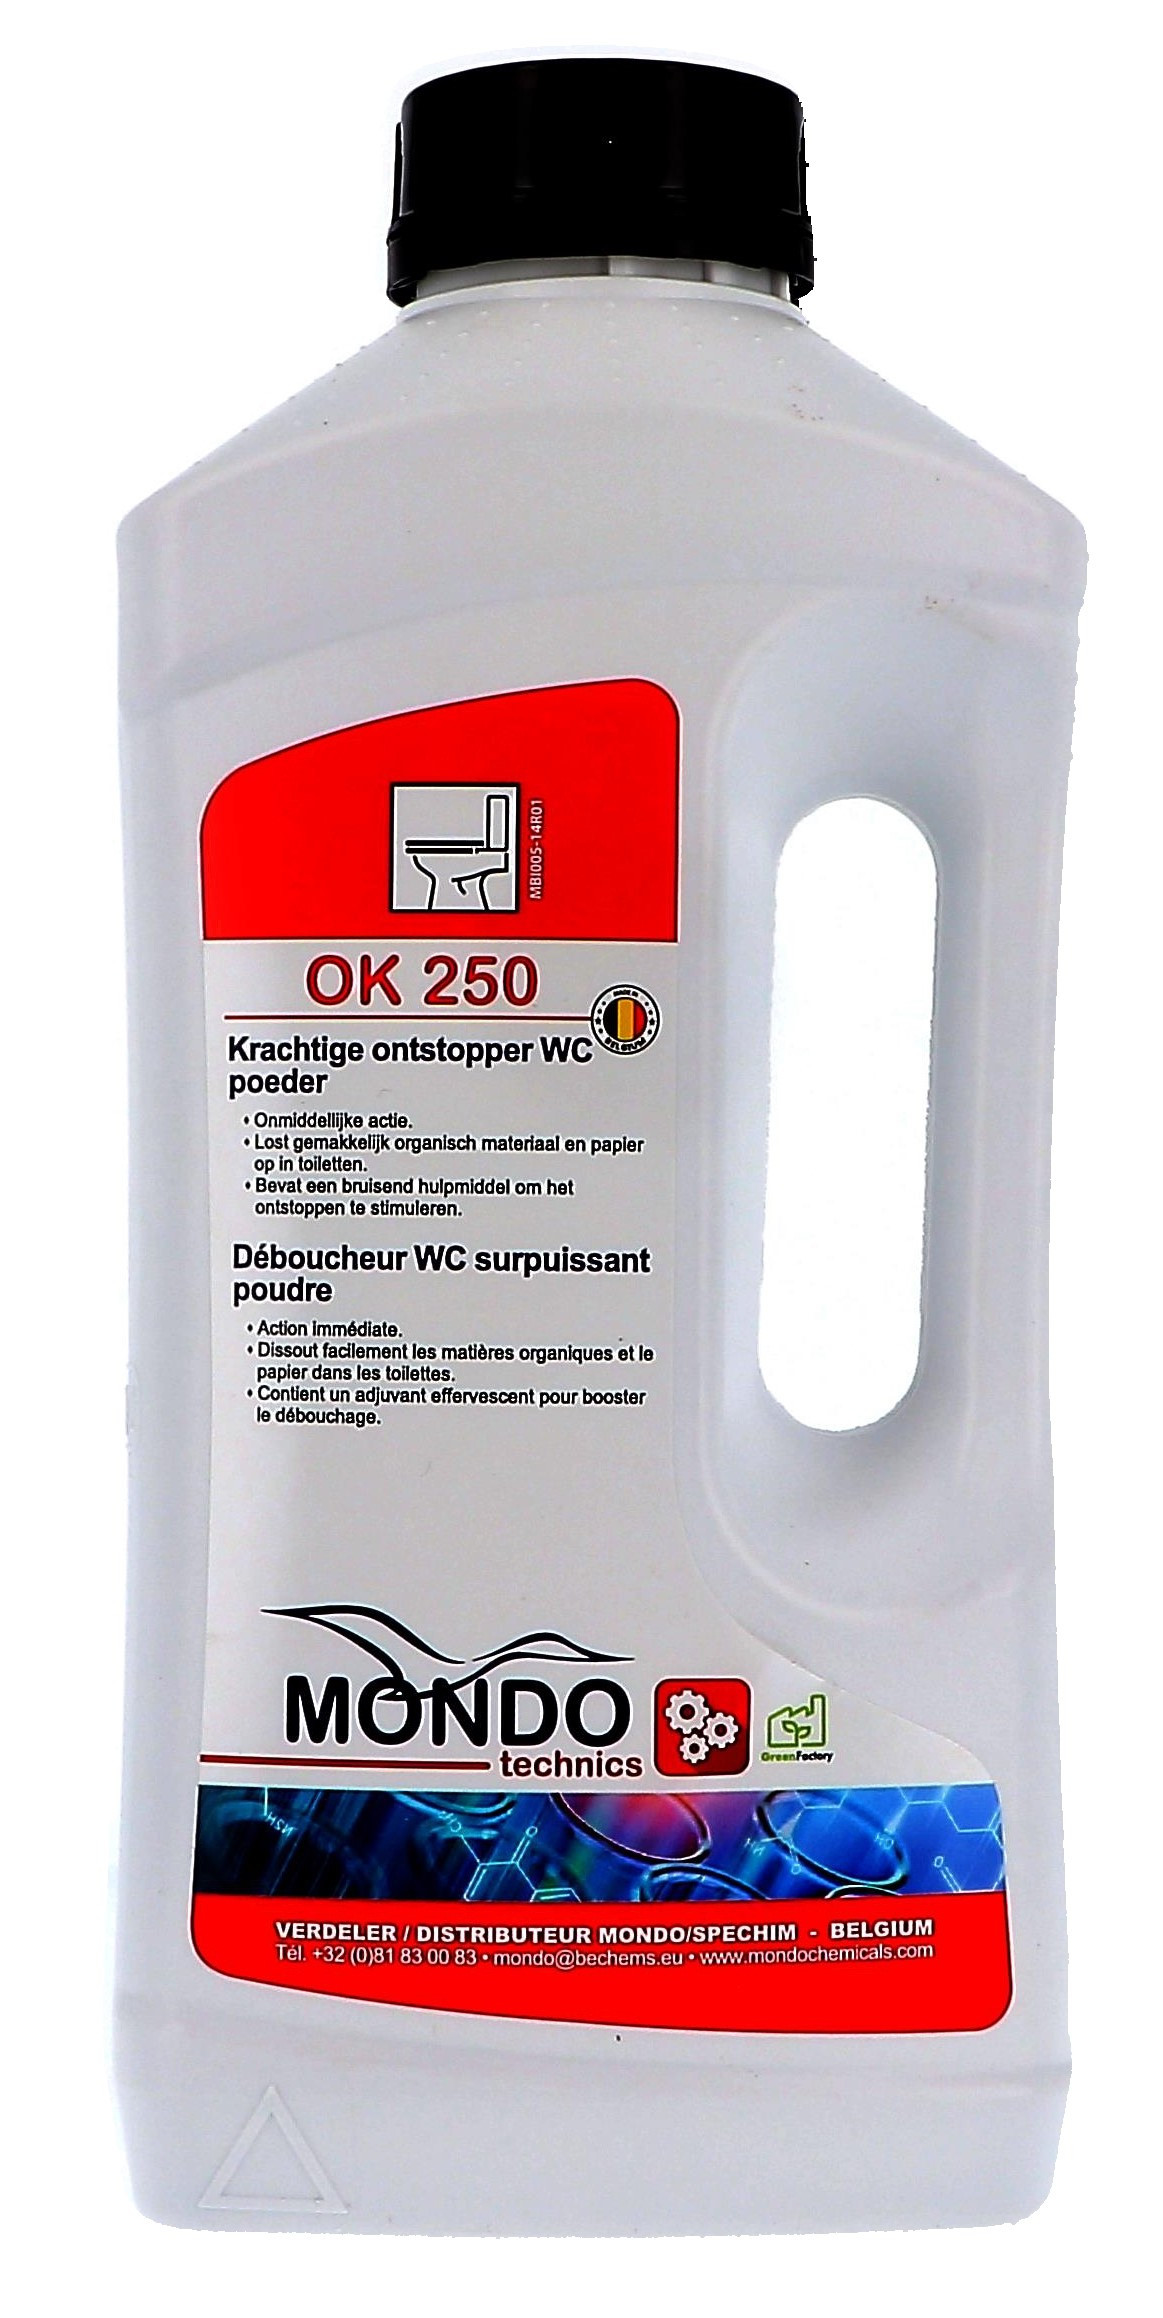 Mondo Chemicals Ok 250 1kg Déboucheur Surpuissant WC poudre (Reinigings-&kuisproducten)